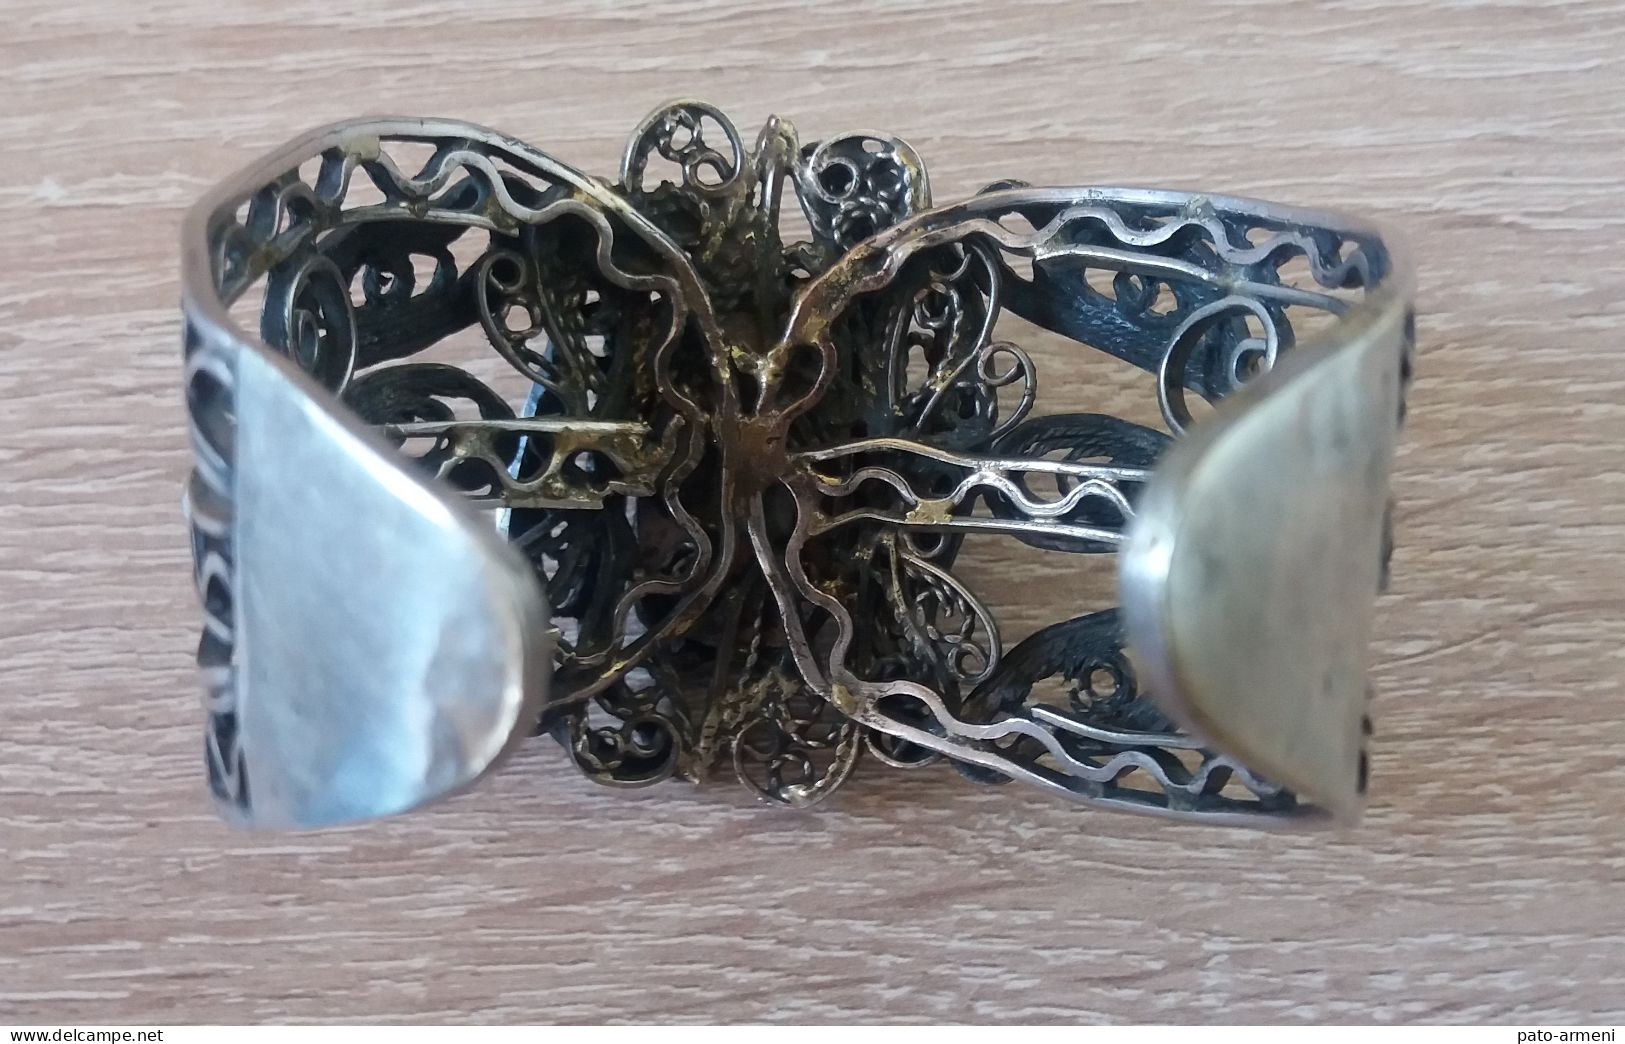 Ancien Bracelet à Poignet Filigrane Soviétique Arménien des Années 1960, Bracelet Arménien, Bracelet tribal ethnique